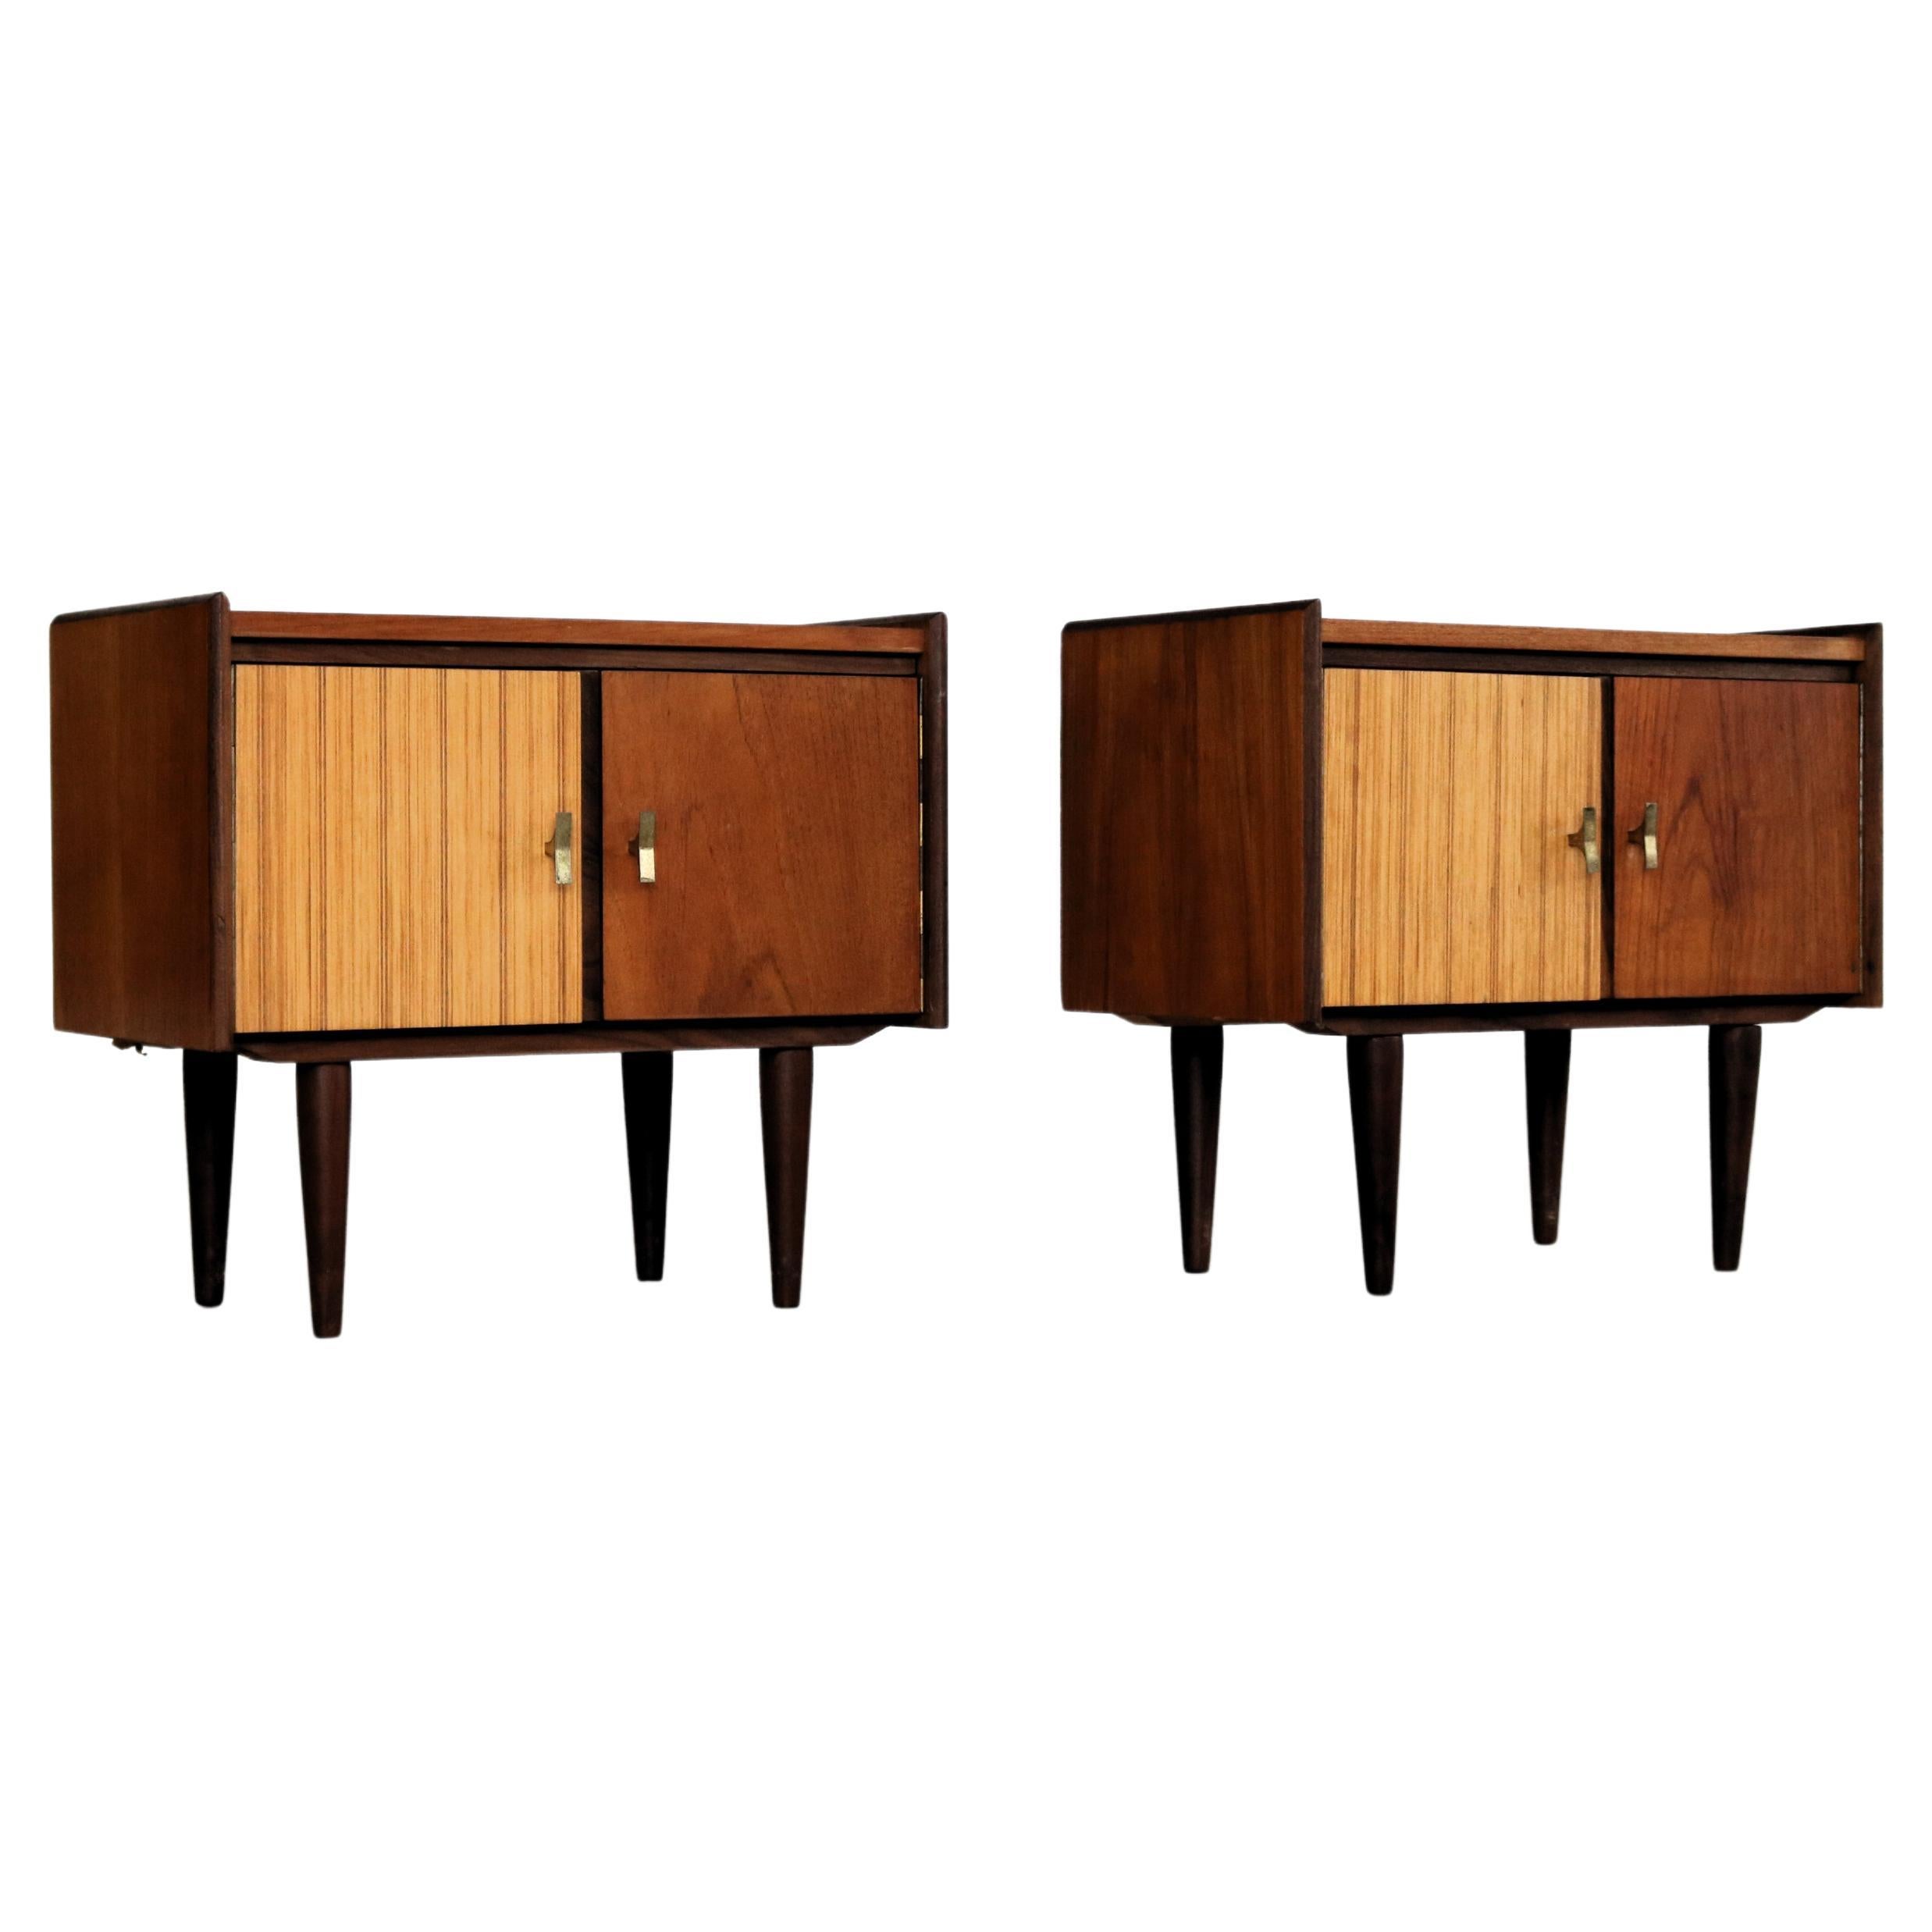  vintage set of bedside tables  cupboards  60s  Sweden 